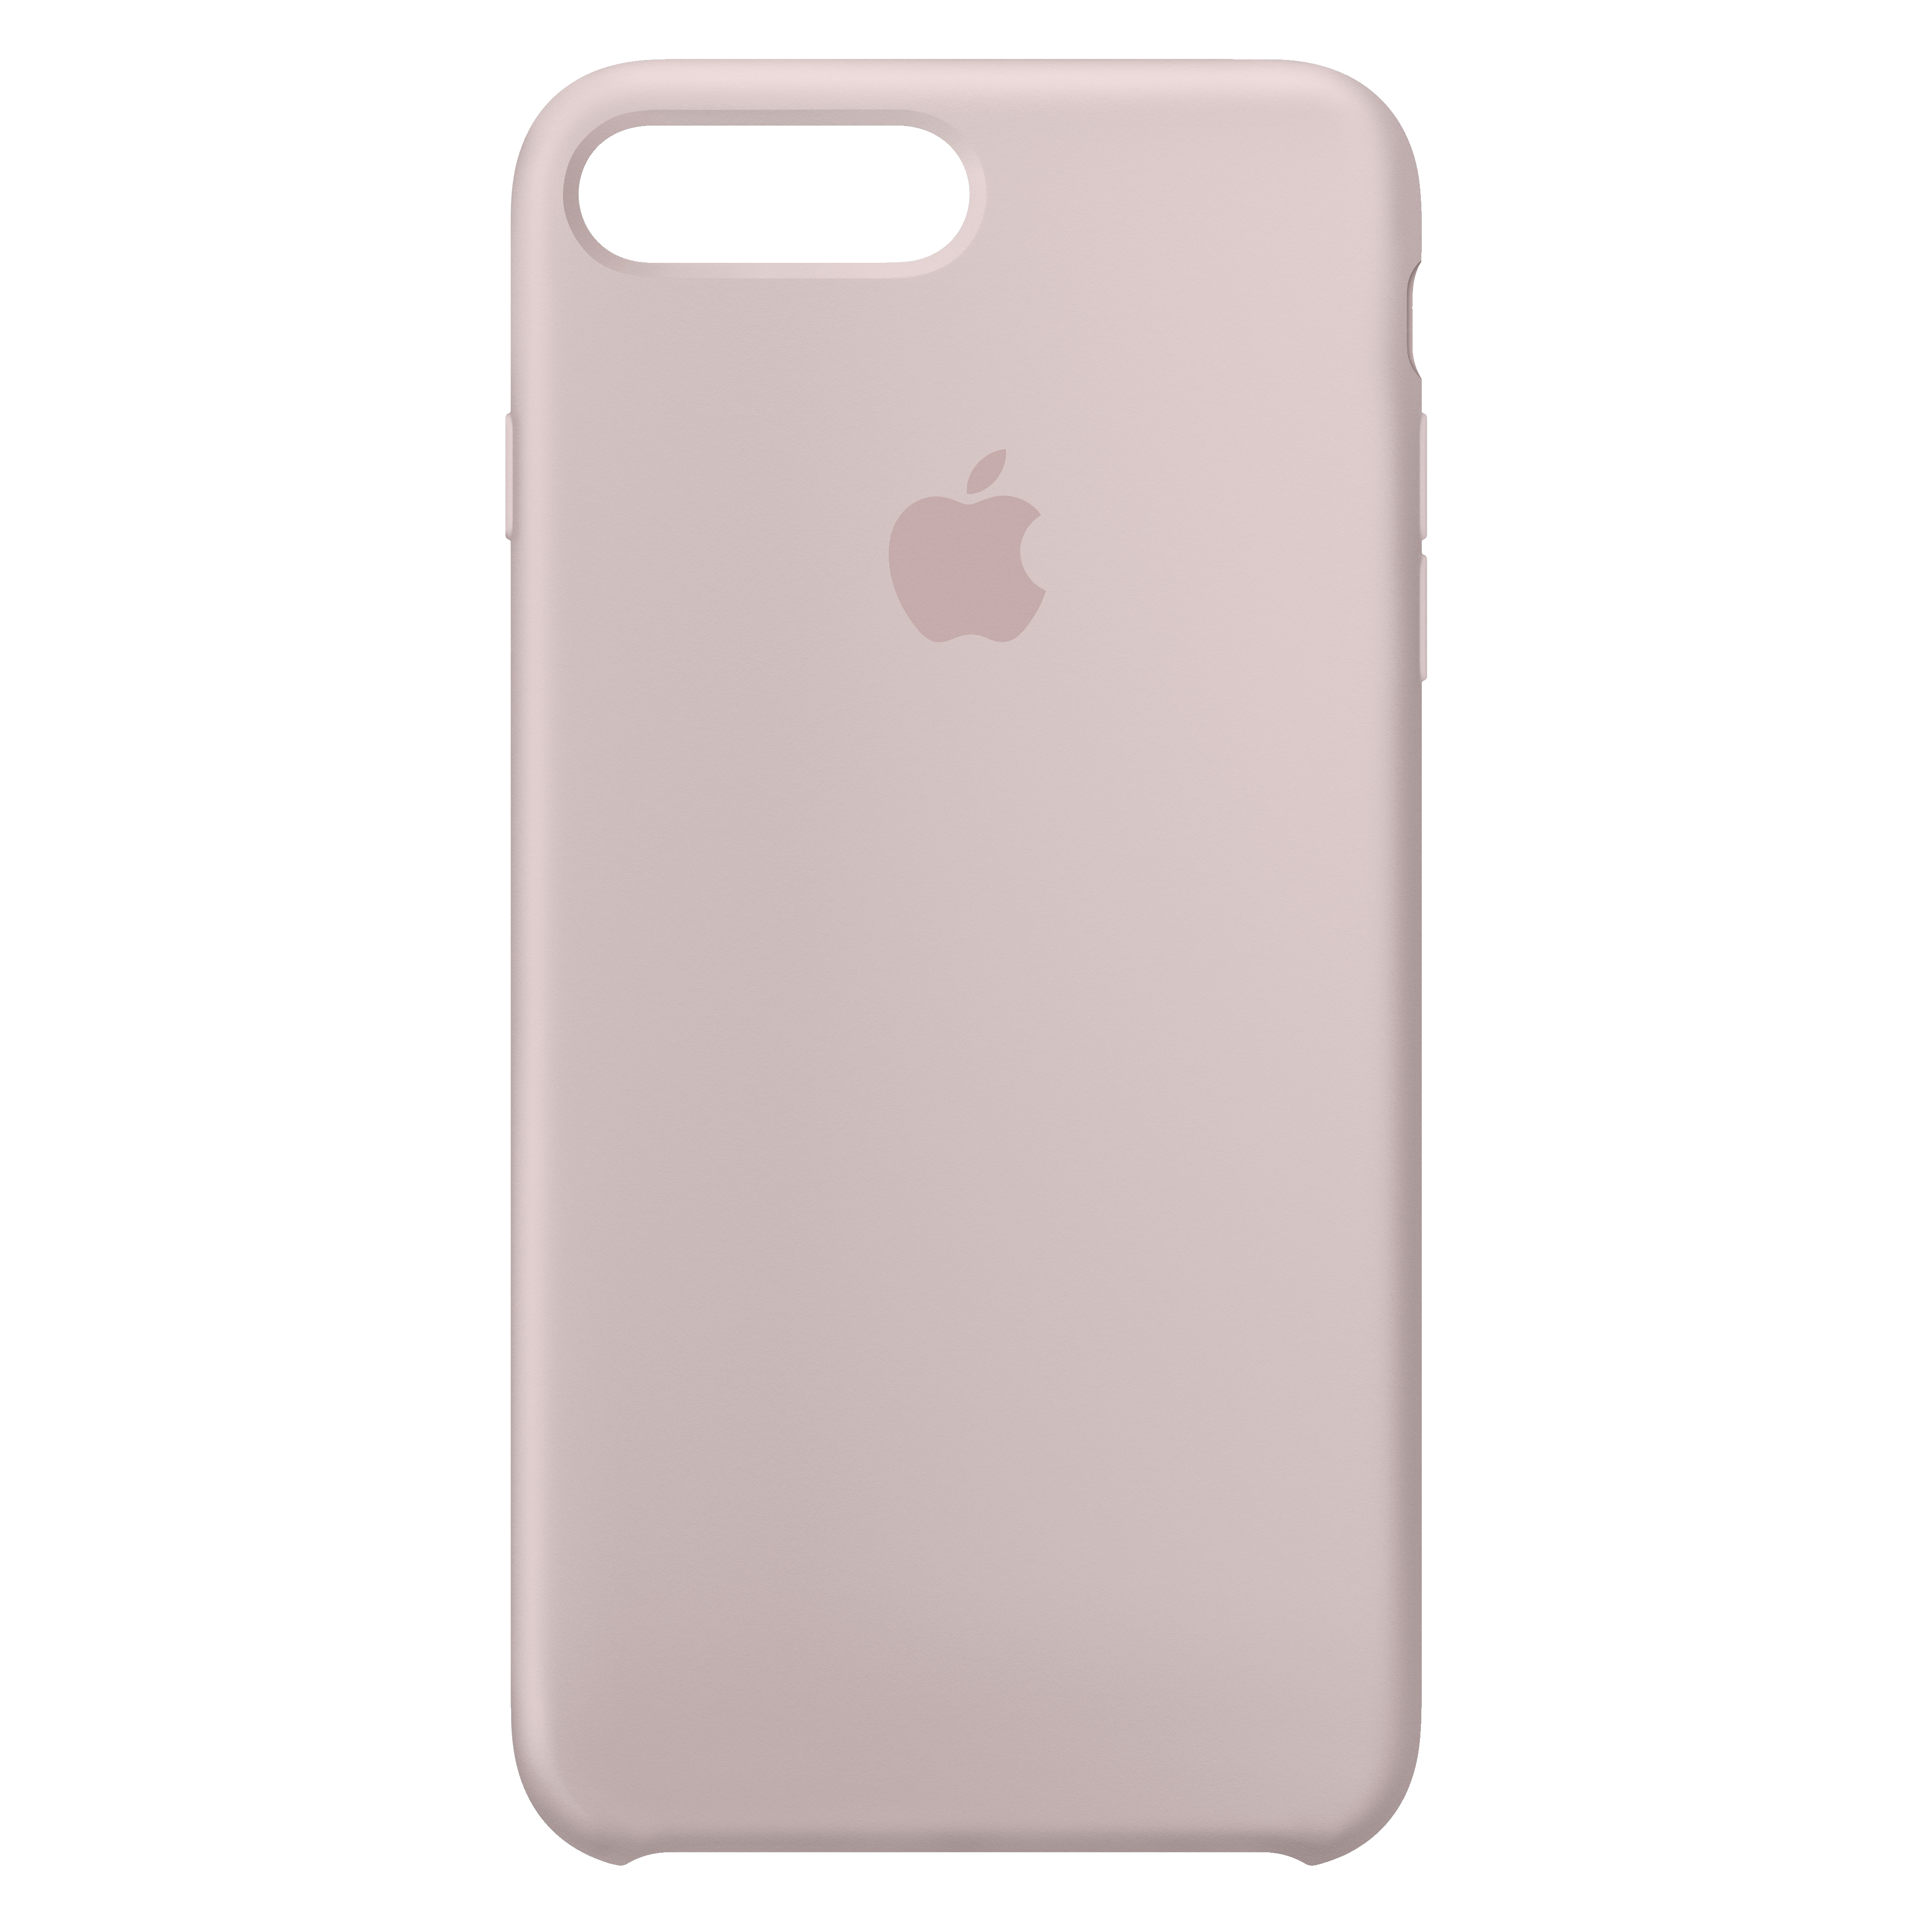 iPhone 8 Plus silikonfodral (rosa sand) - Skal och Fodral - Elgiganten